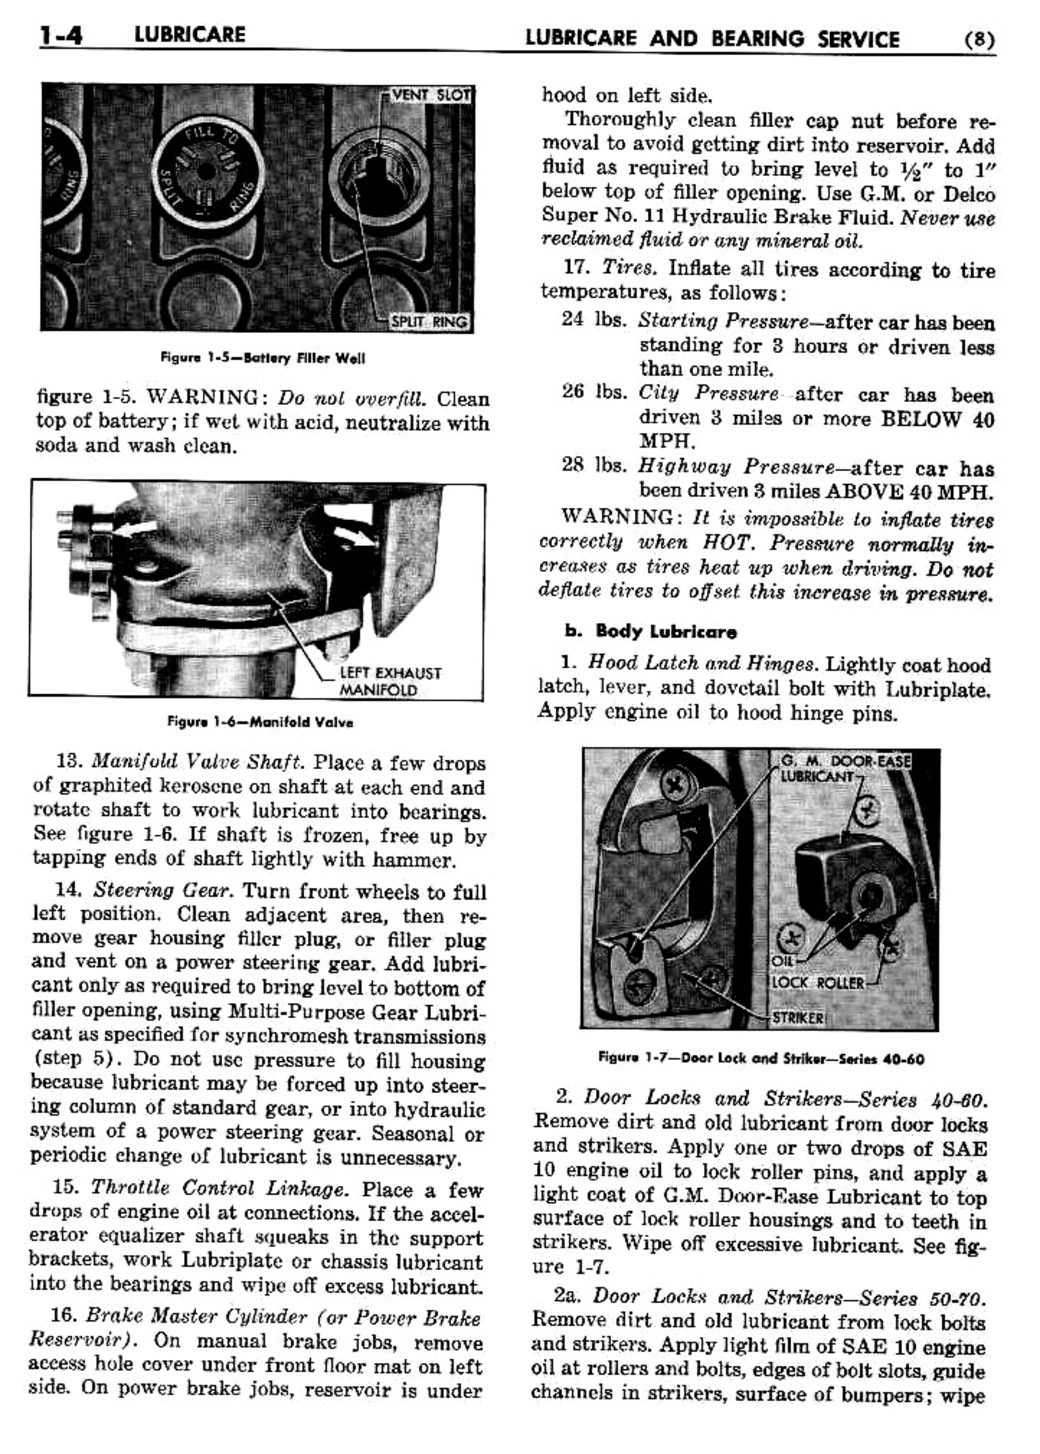 n_02 1955 Buick Shop Manual - Lubricare-004-004.jpg